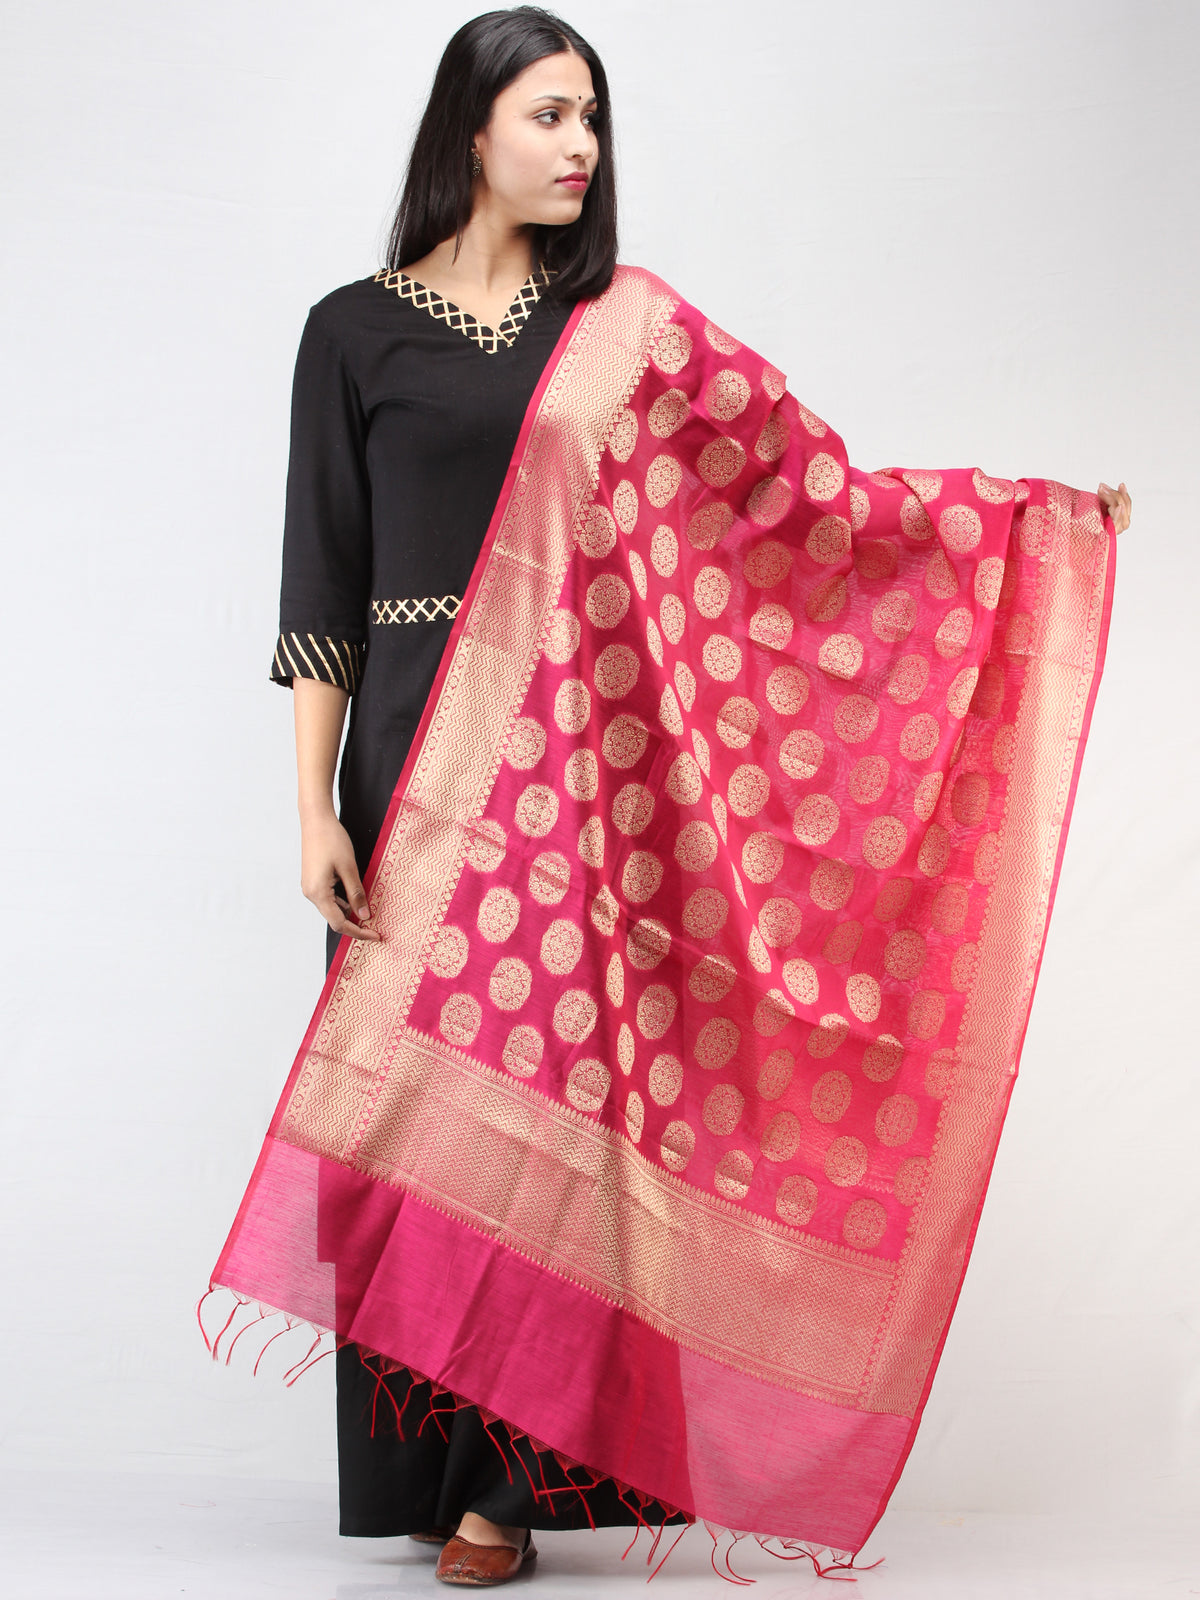 Banarasi Semi Georgette Dupatta With Zari Work -  Hot Pink & Gold  - D04170915